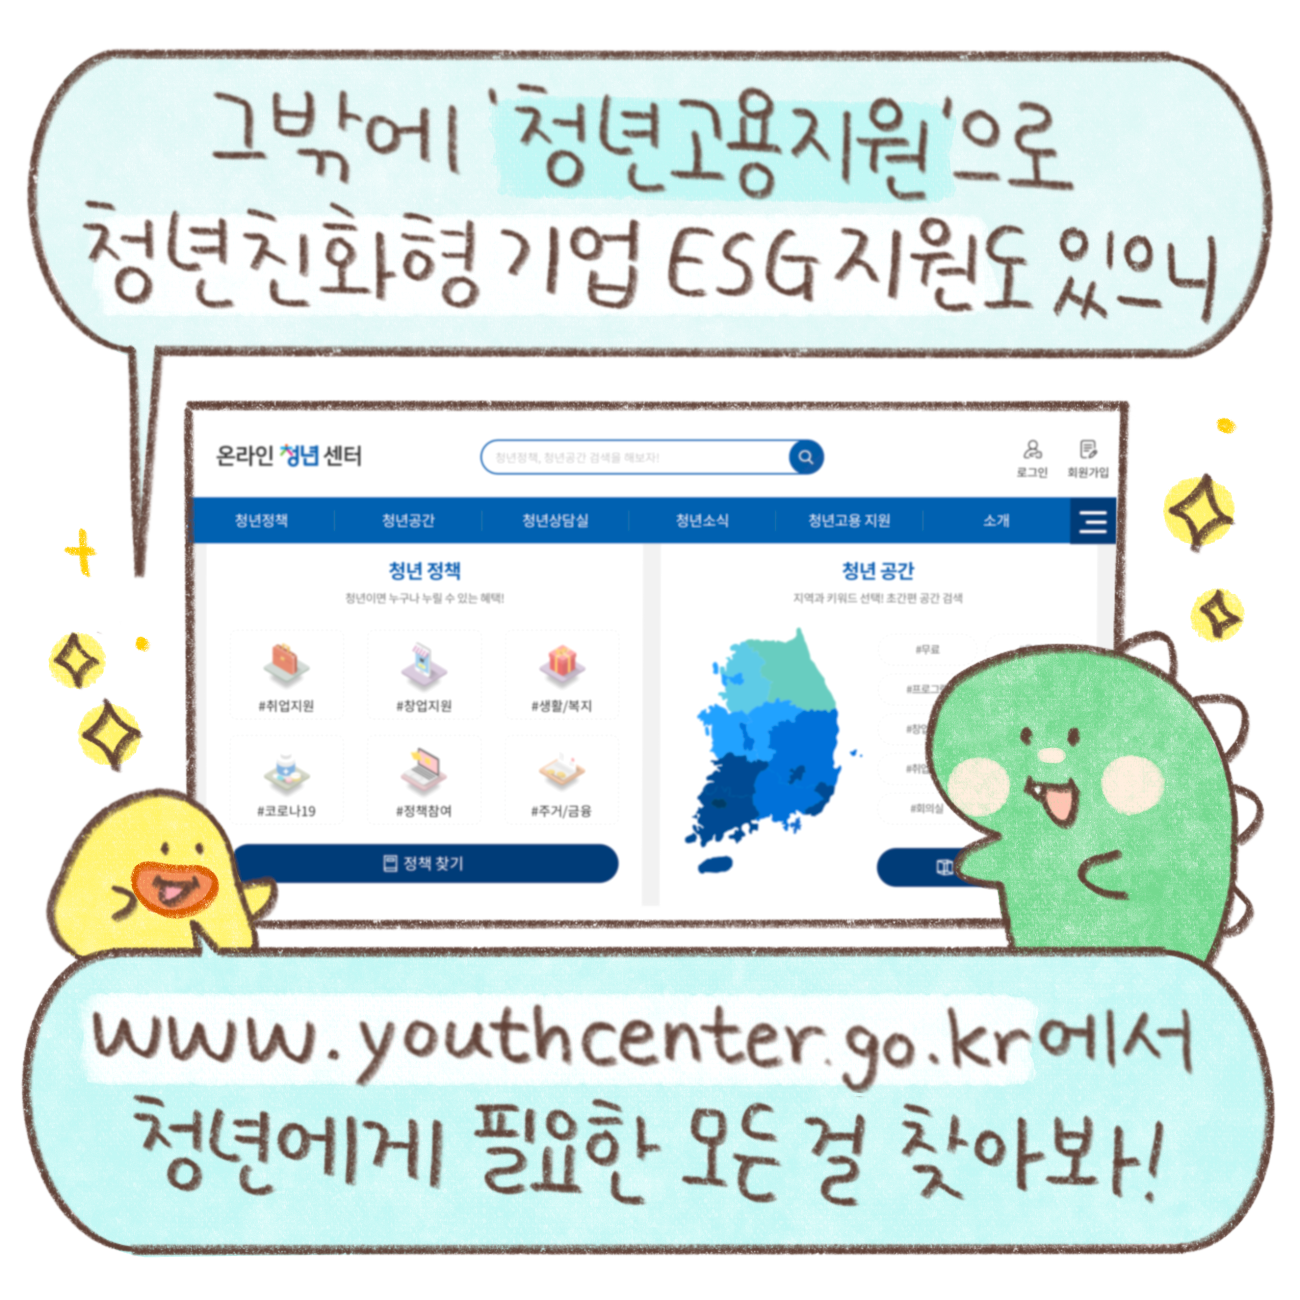 그밖에 '청년고용지원'으로 청년친화형기업 ESG지원도 있으니
www.youthcenter.go.kr에서 청년에게 필요한 모든 걸 찾아봐!